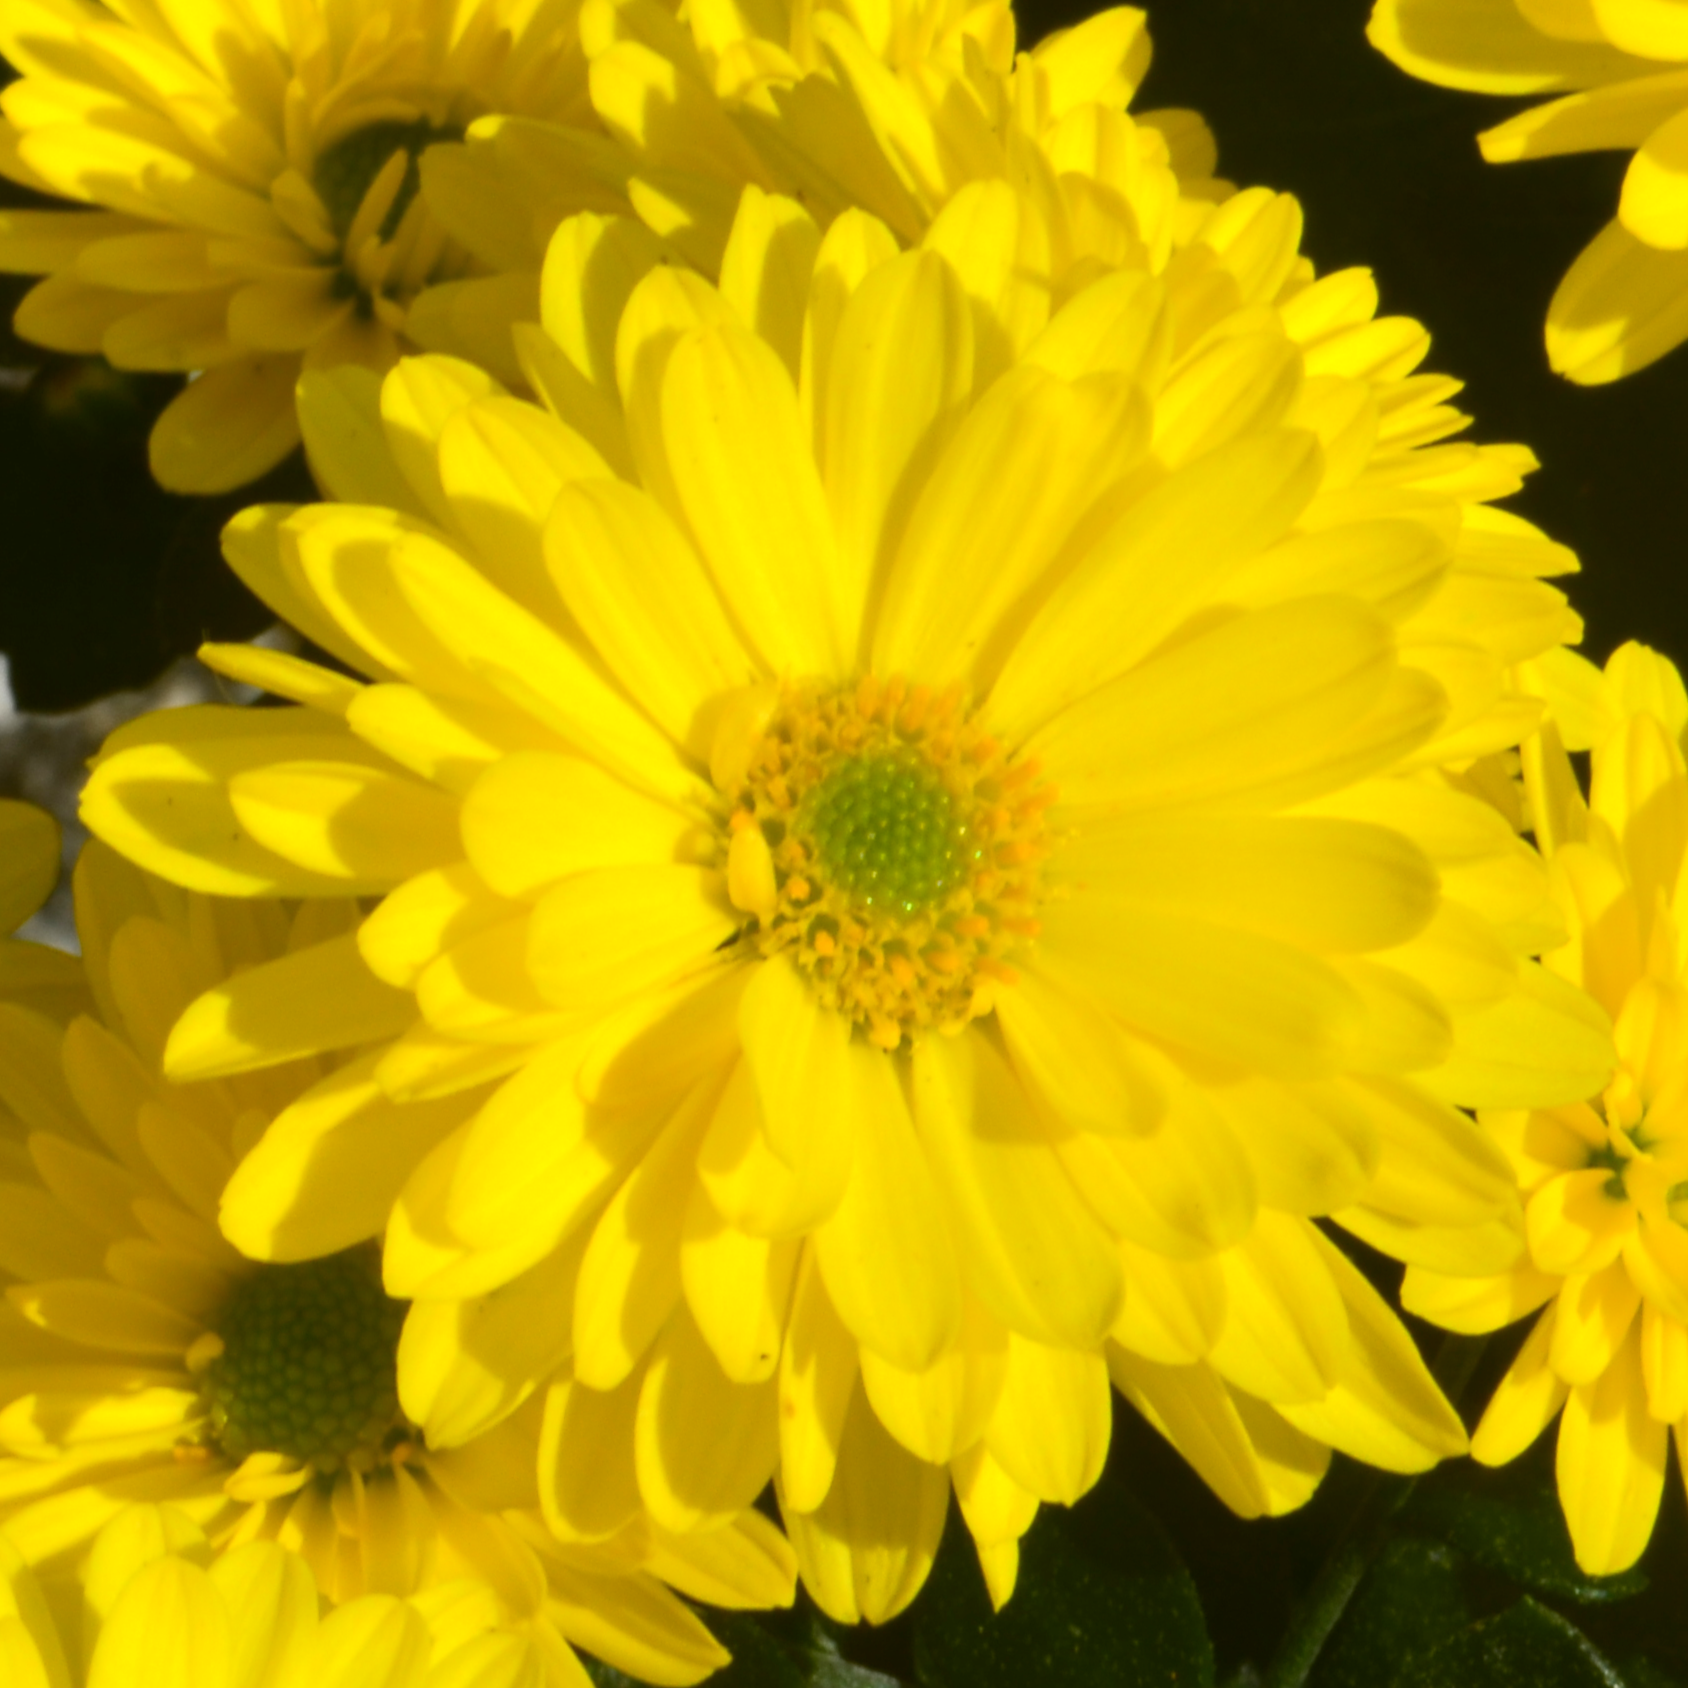 Chrysanthemum Urano 'Yellow' - Mum from Hillcrest Nursery